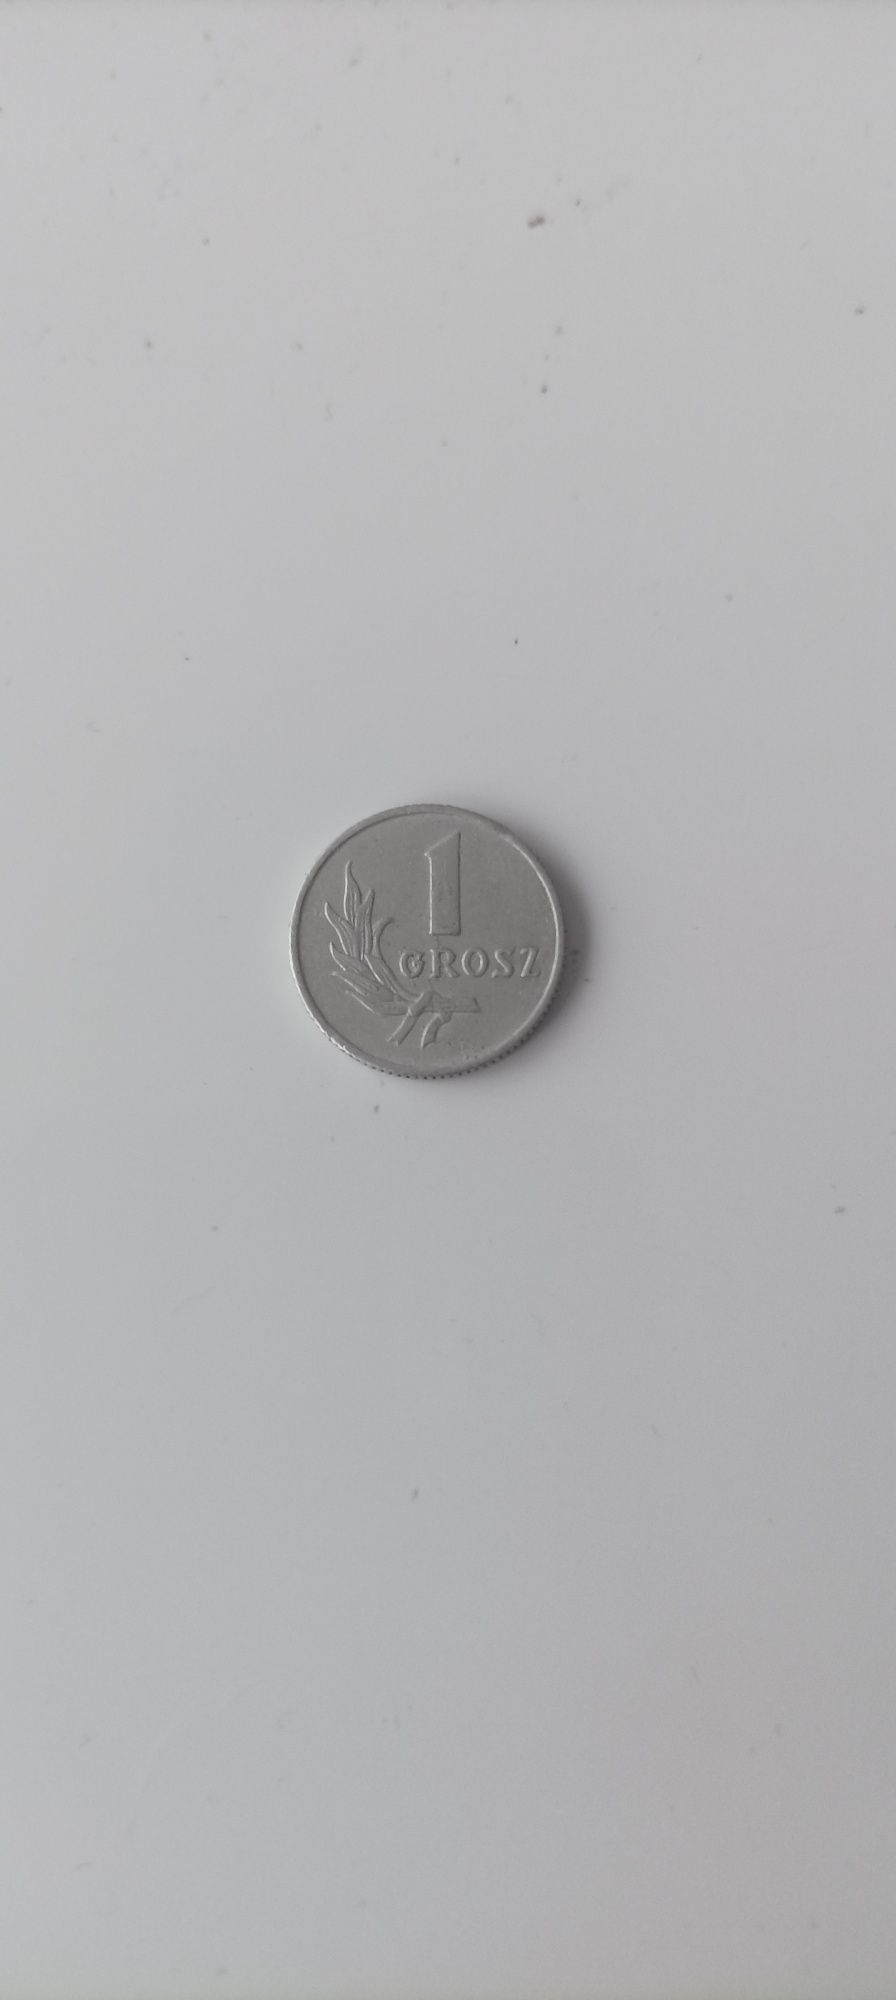 1 grosz moneta obiegowa PRL 1949 rok